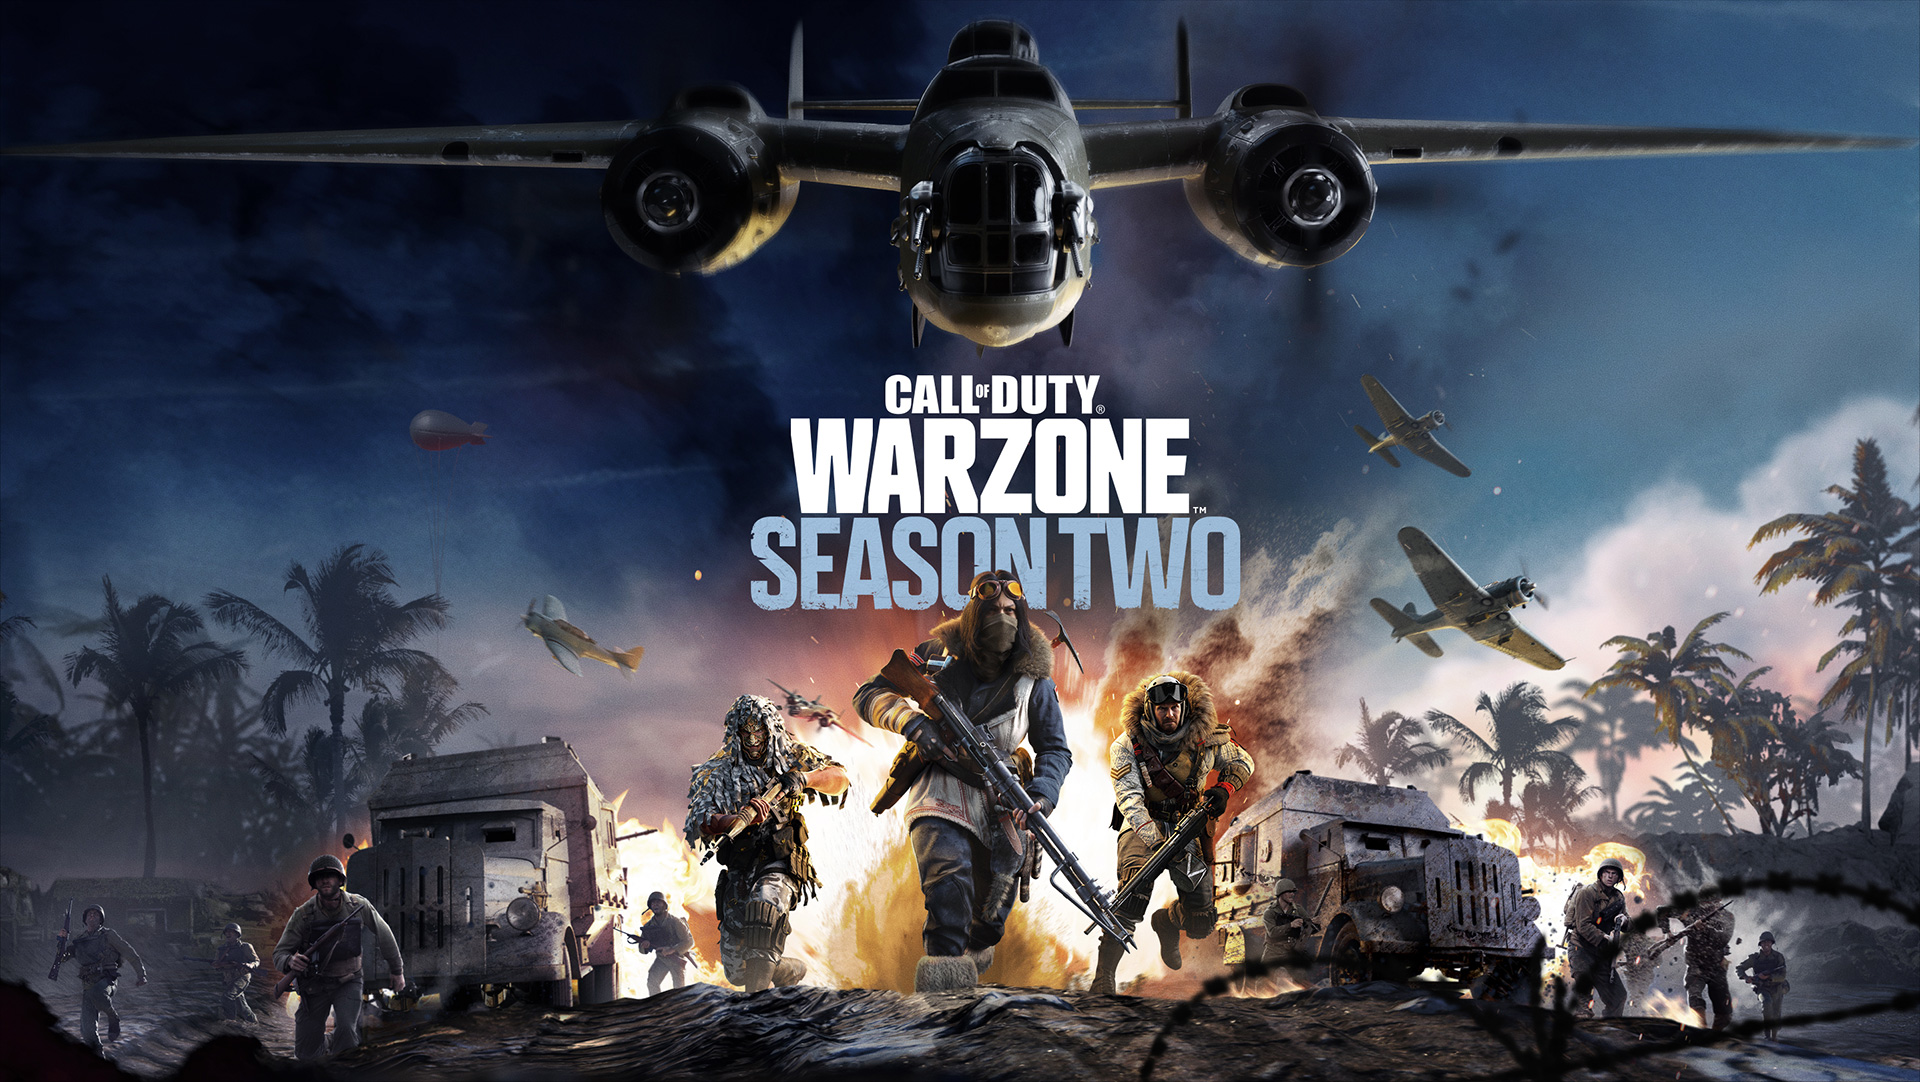 Năm 2023: Call of Duty có thể bỏ không ra game chính mới, nhưng Warzone 2 thì sẽ có mặt